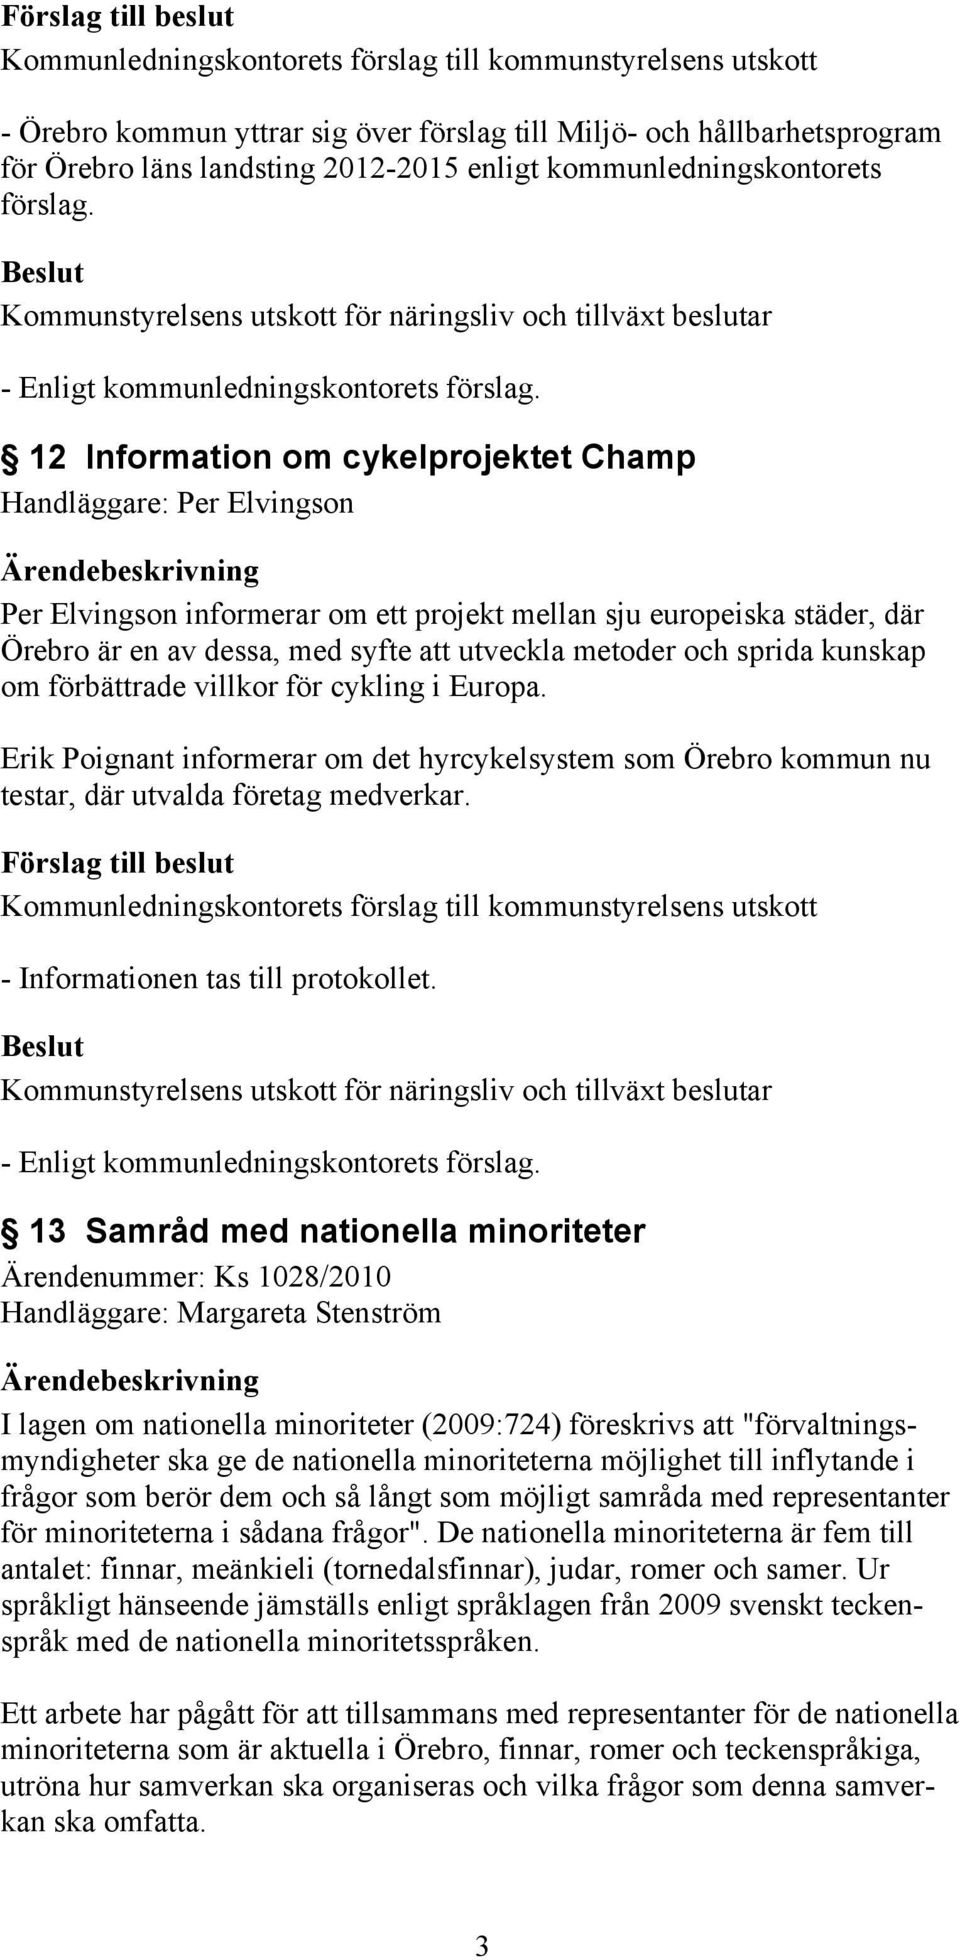 sprida kunskap om förbättrade villkor för cykling i Europa. Erik Poignant informerar om det hyrcykelsystem som Örebro kommun nu testar, där utvalda företag medverkar.